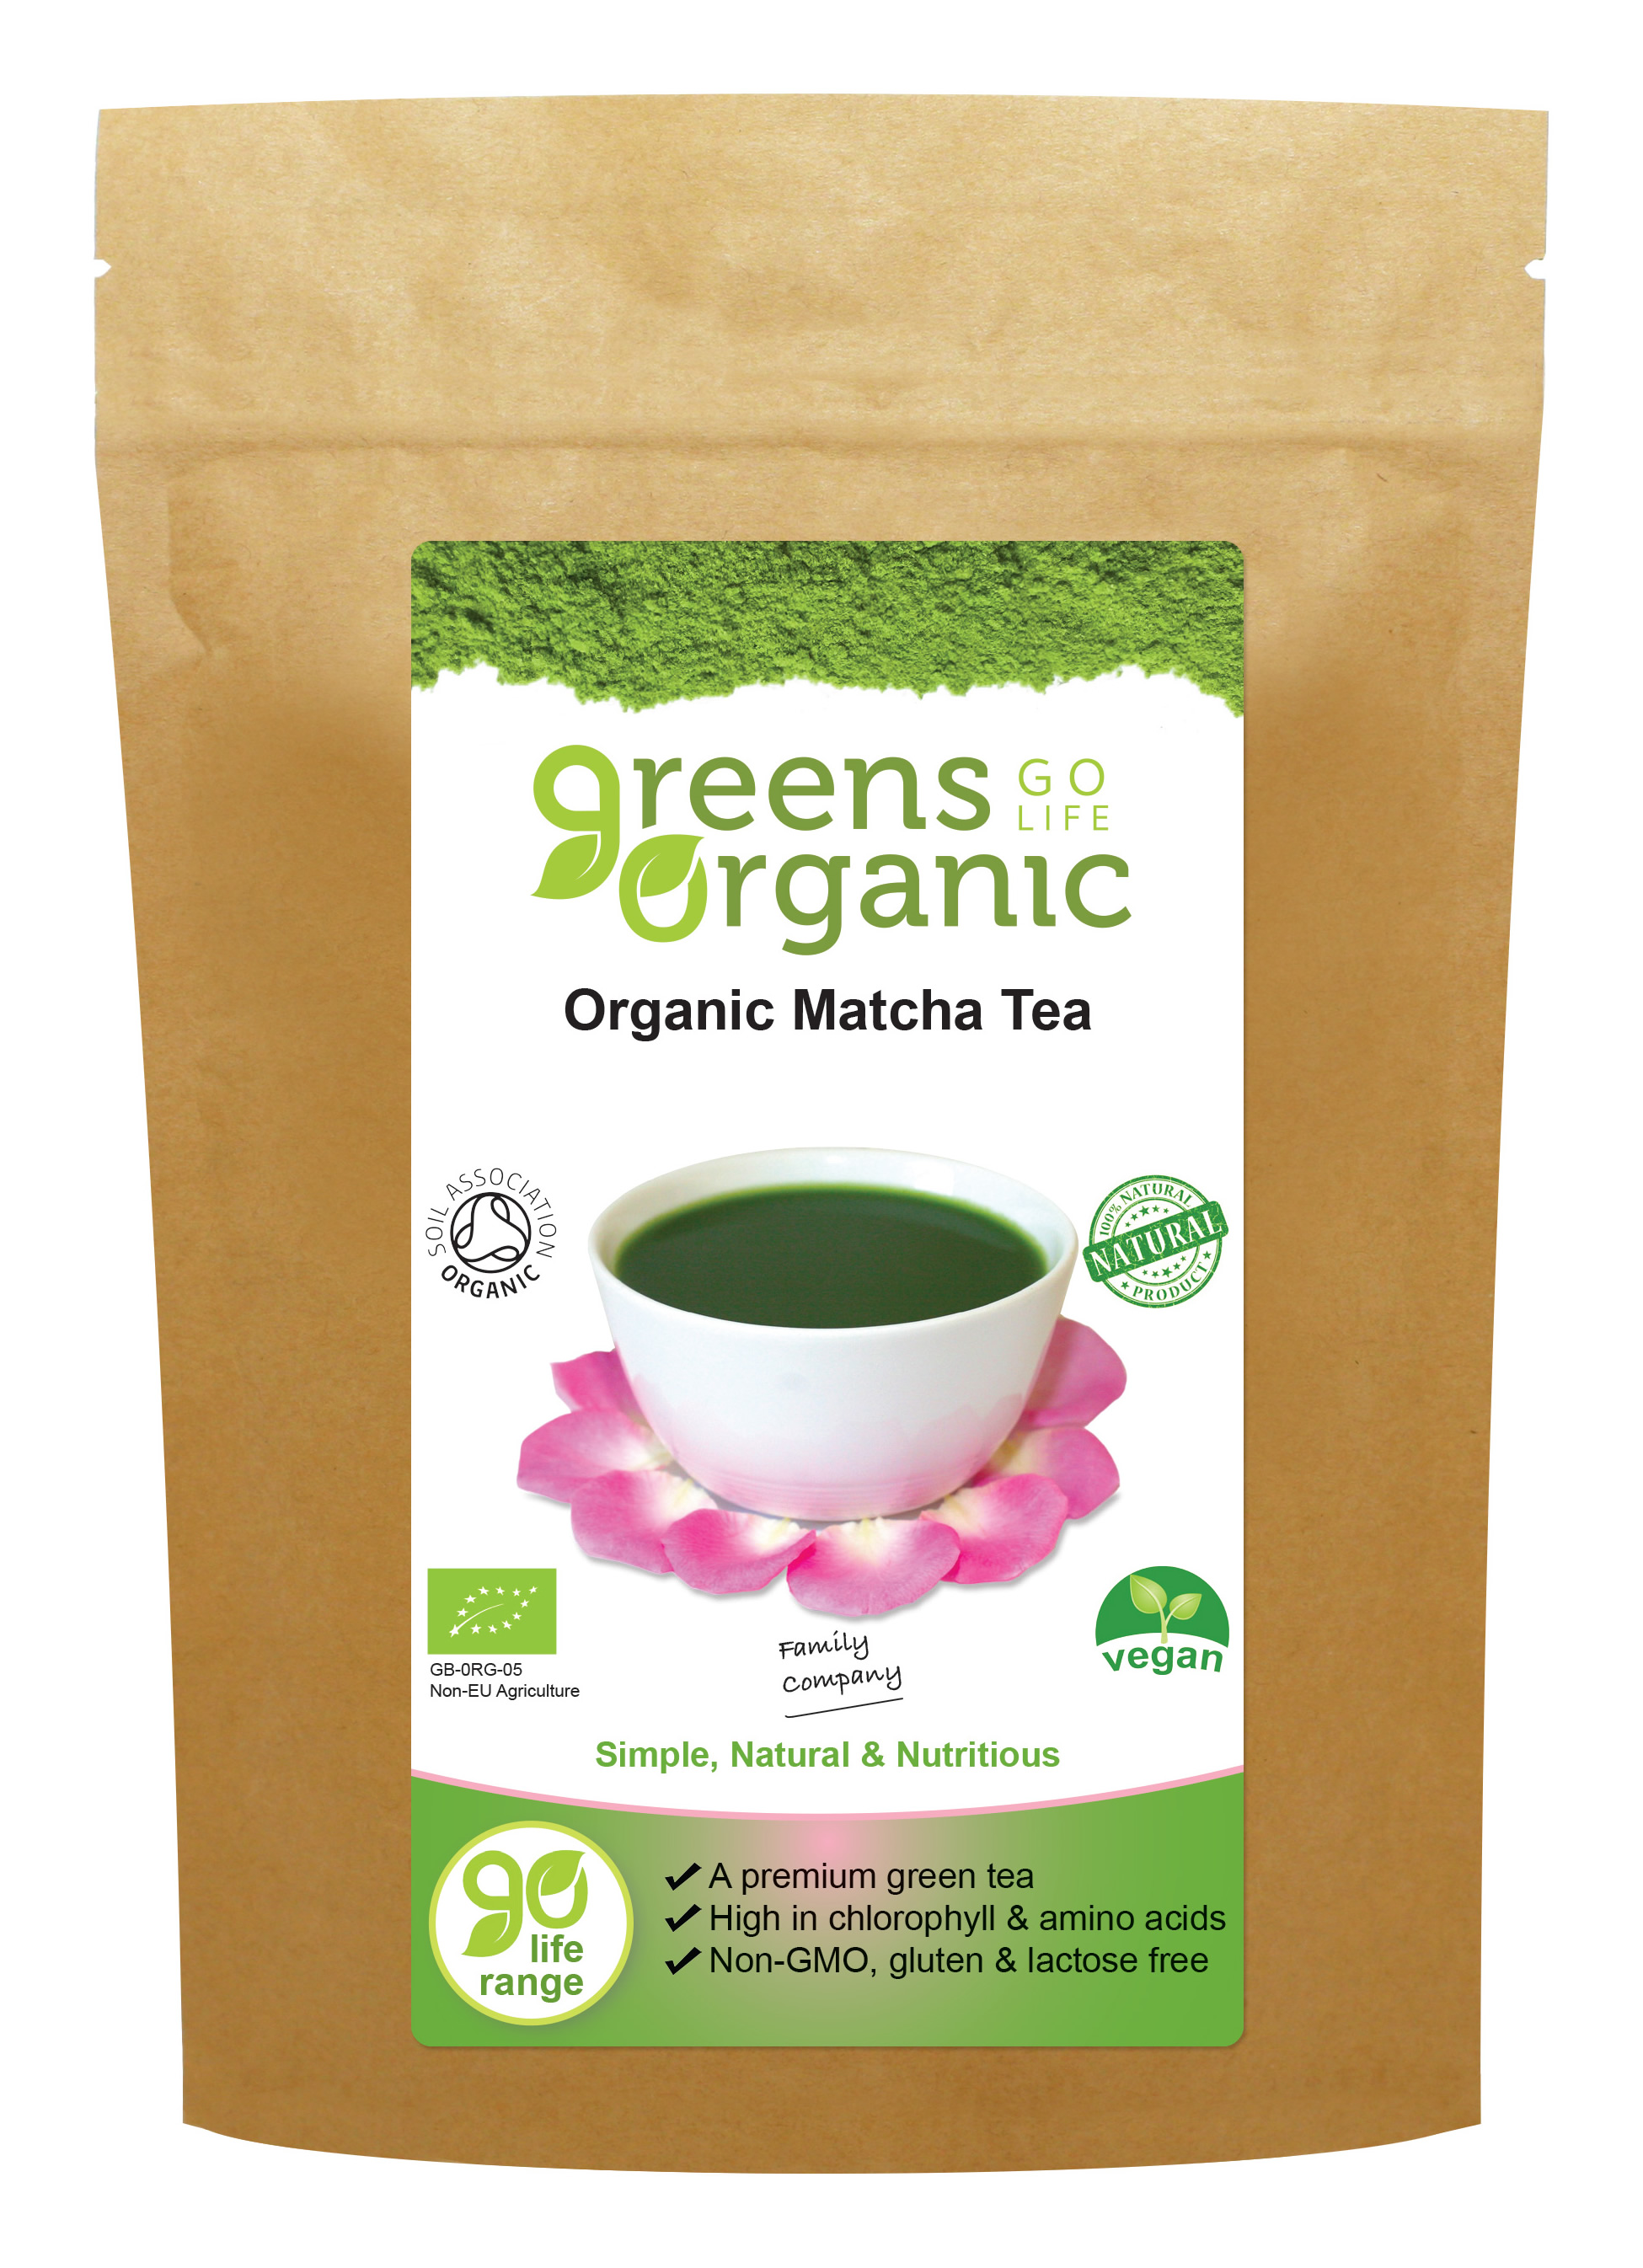 Greens Organic | Organic Matcha Tea at Natures Bond